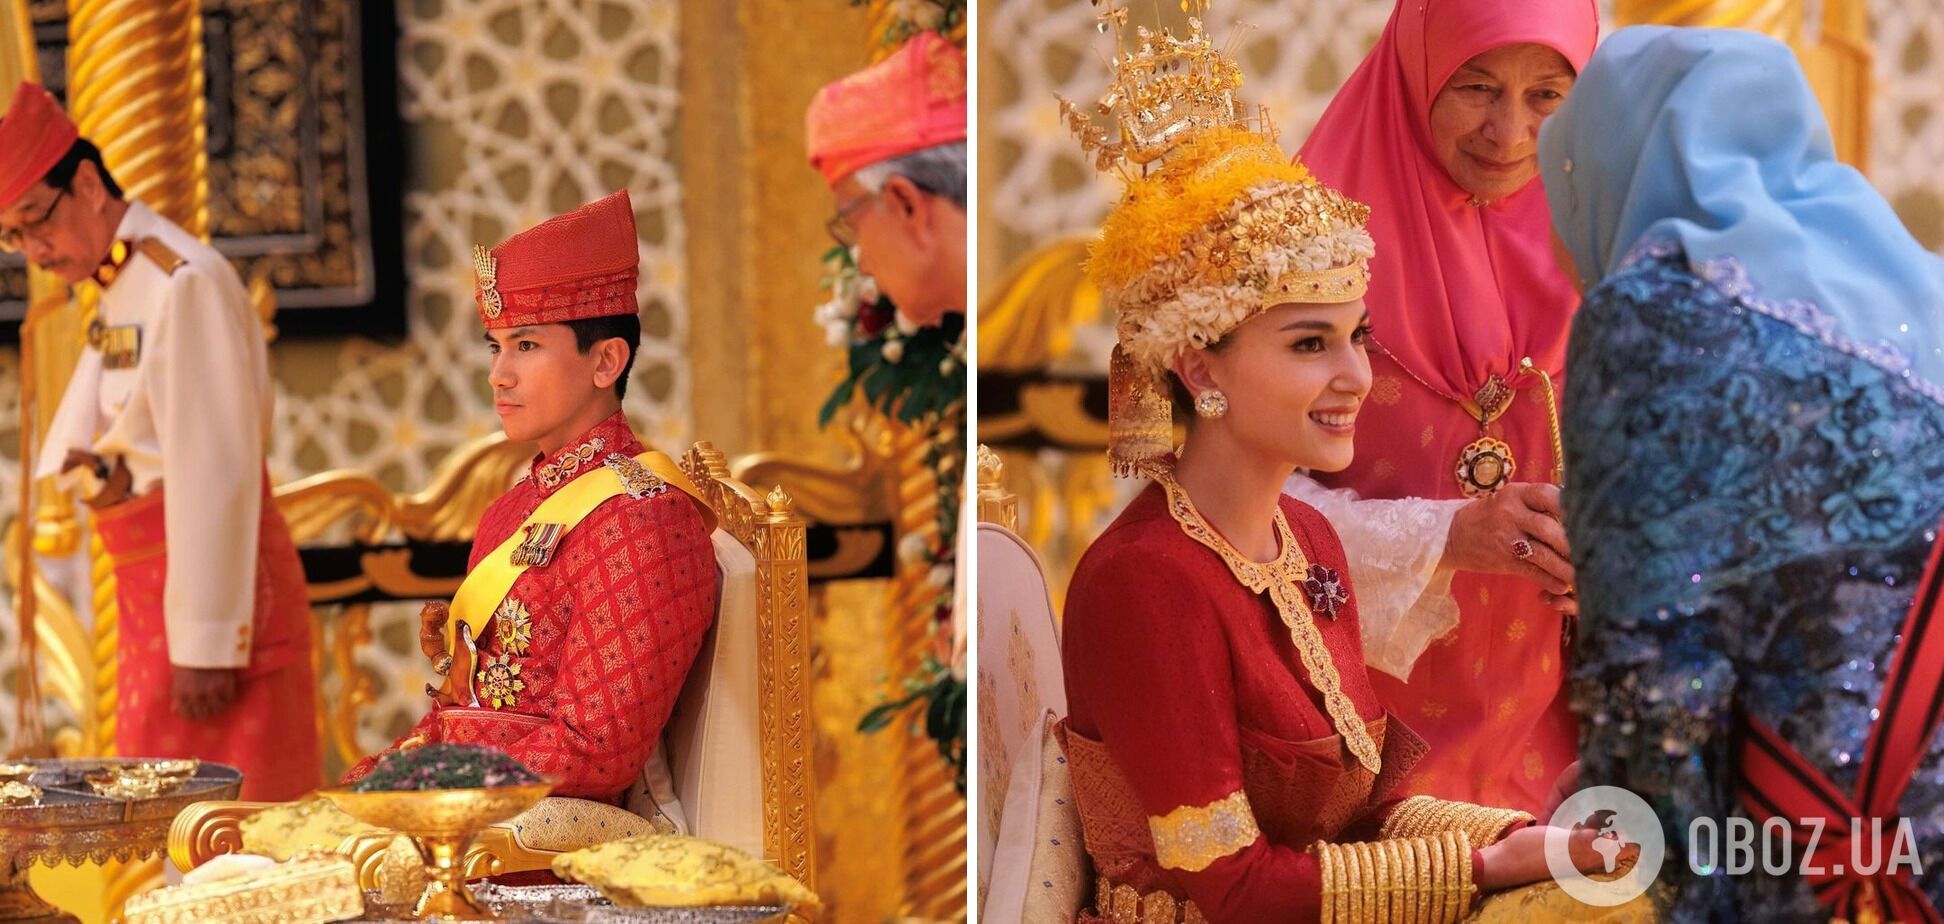 Появились первые фото со свадьбы самого привлекательного холостяка Азии – 32-летнего принца Брунея Абдула Матина